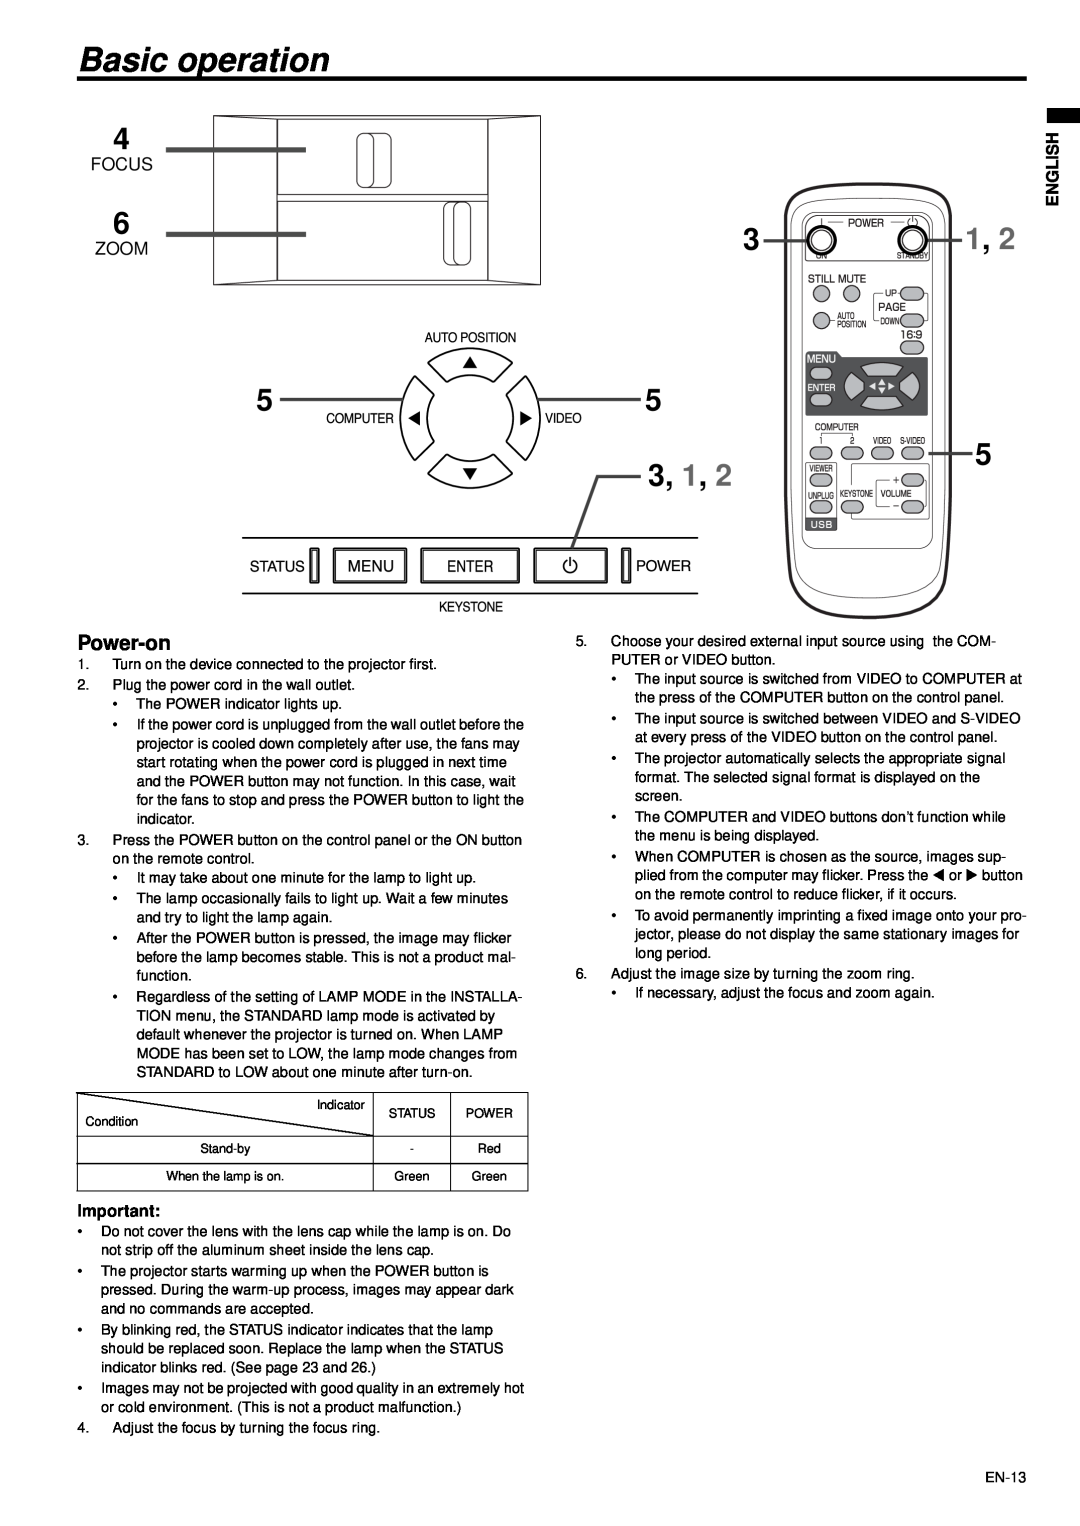 Mitsubishi Electronics XD470U-G user manual Basic operation, Power-on, Focus, Zoom, English 